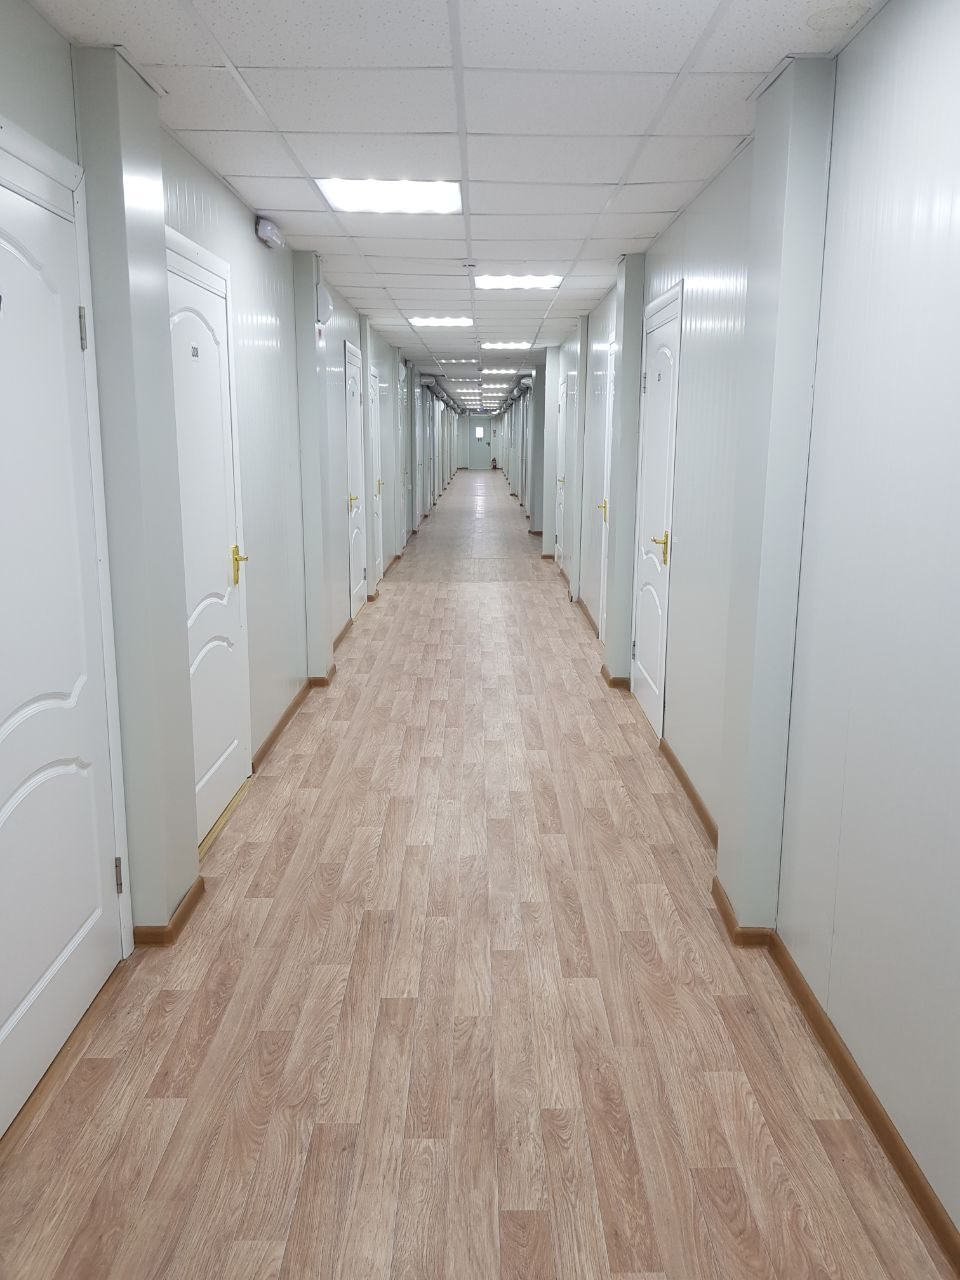 Внутри зданий — длинные коридоры и много-много комнат